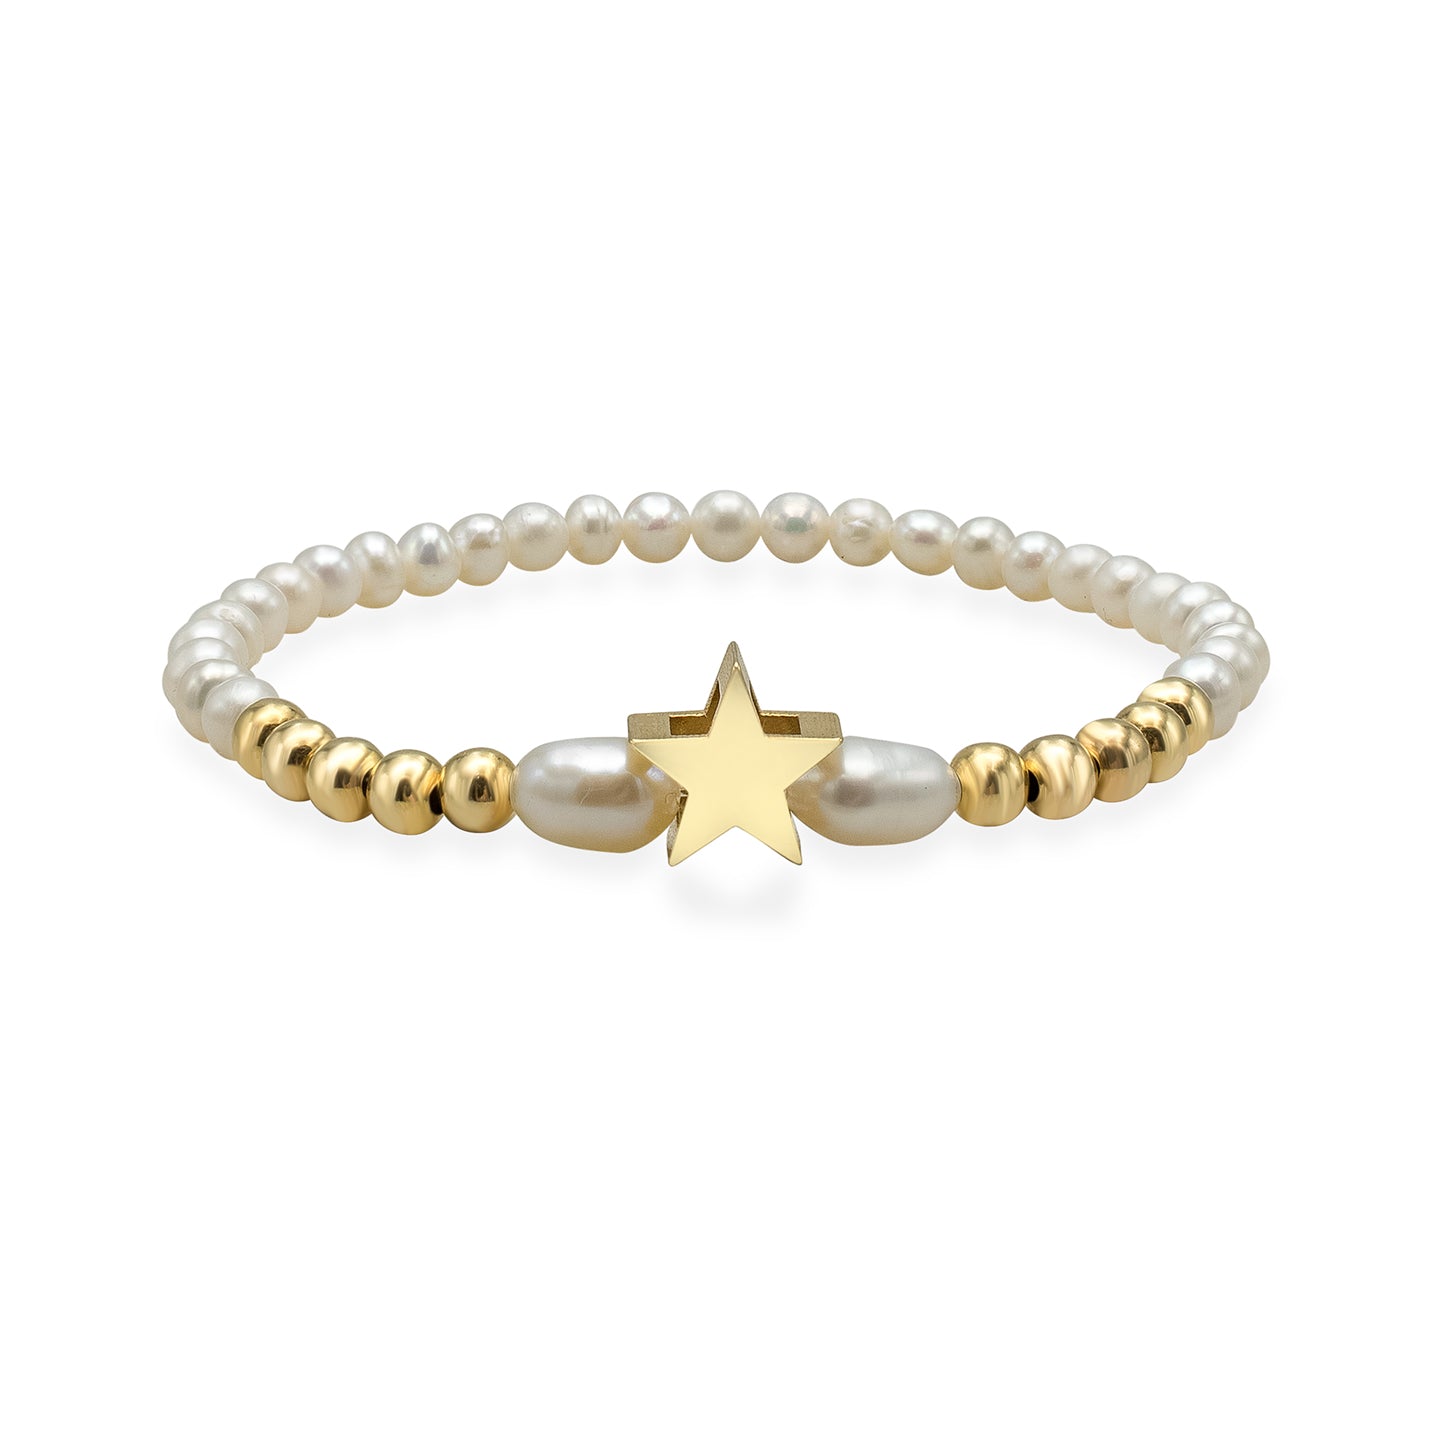 Bratara argint stea si perle Pearly Star - placata aur galben 18K